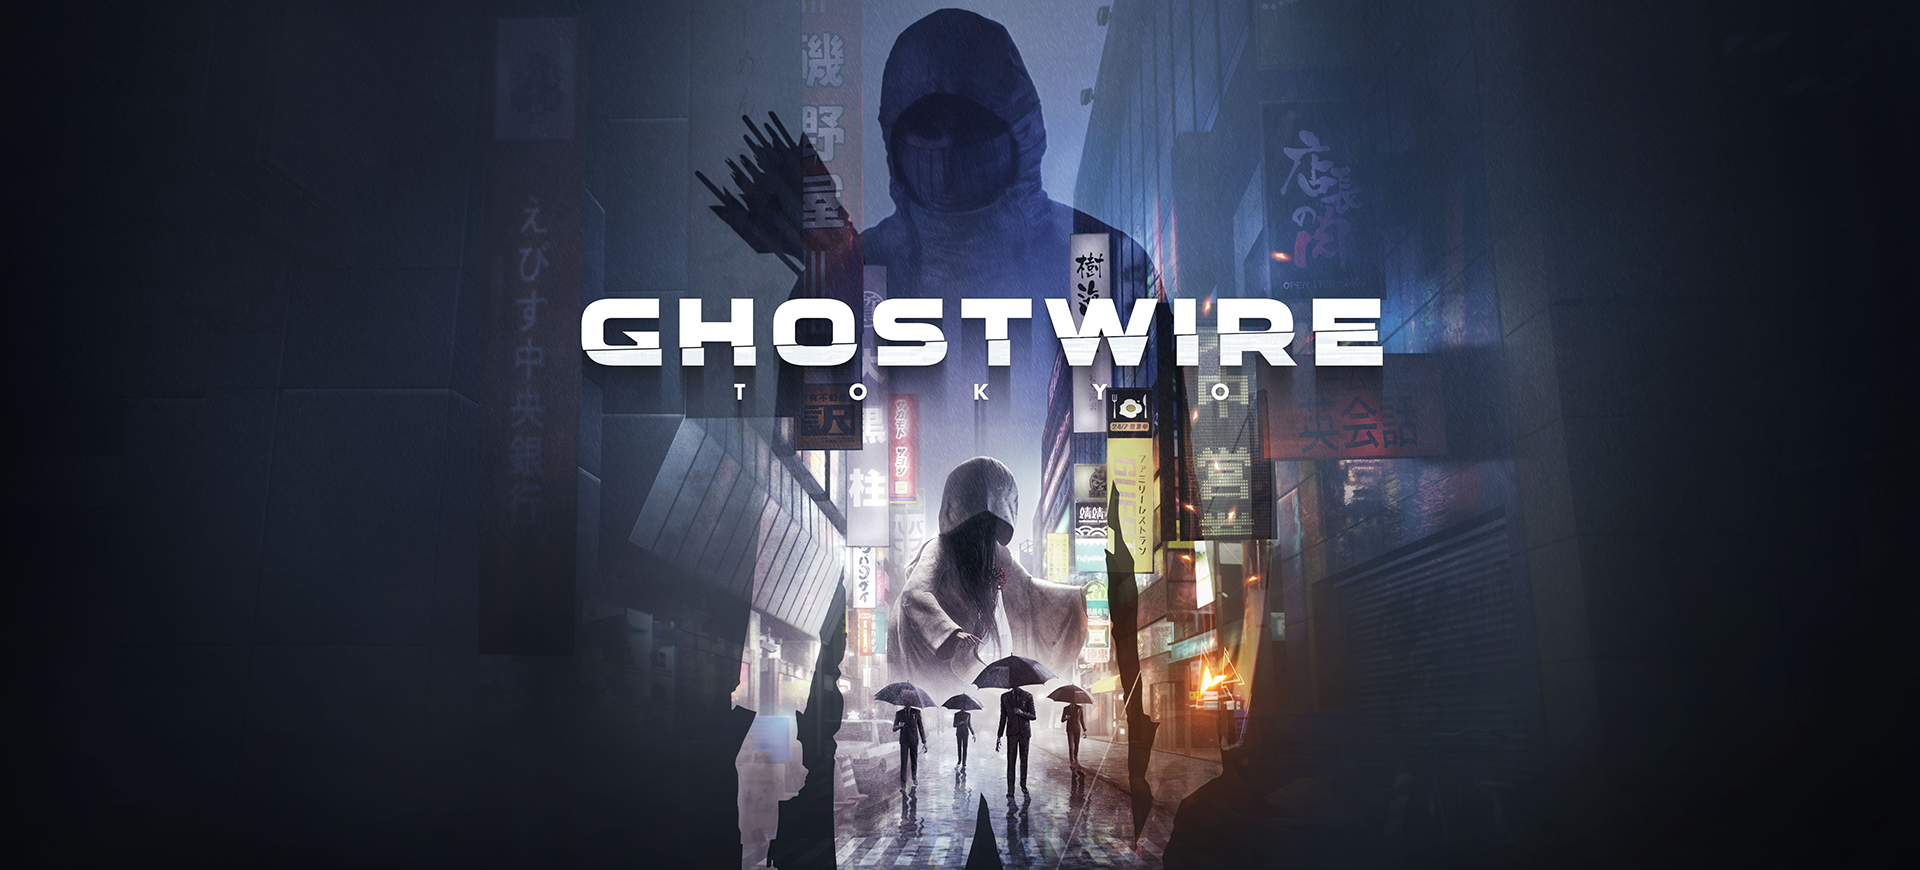 Ghostwire: разработчик из Токио раскрывает новый проект с режиссером Evil Within 2